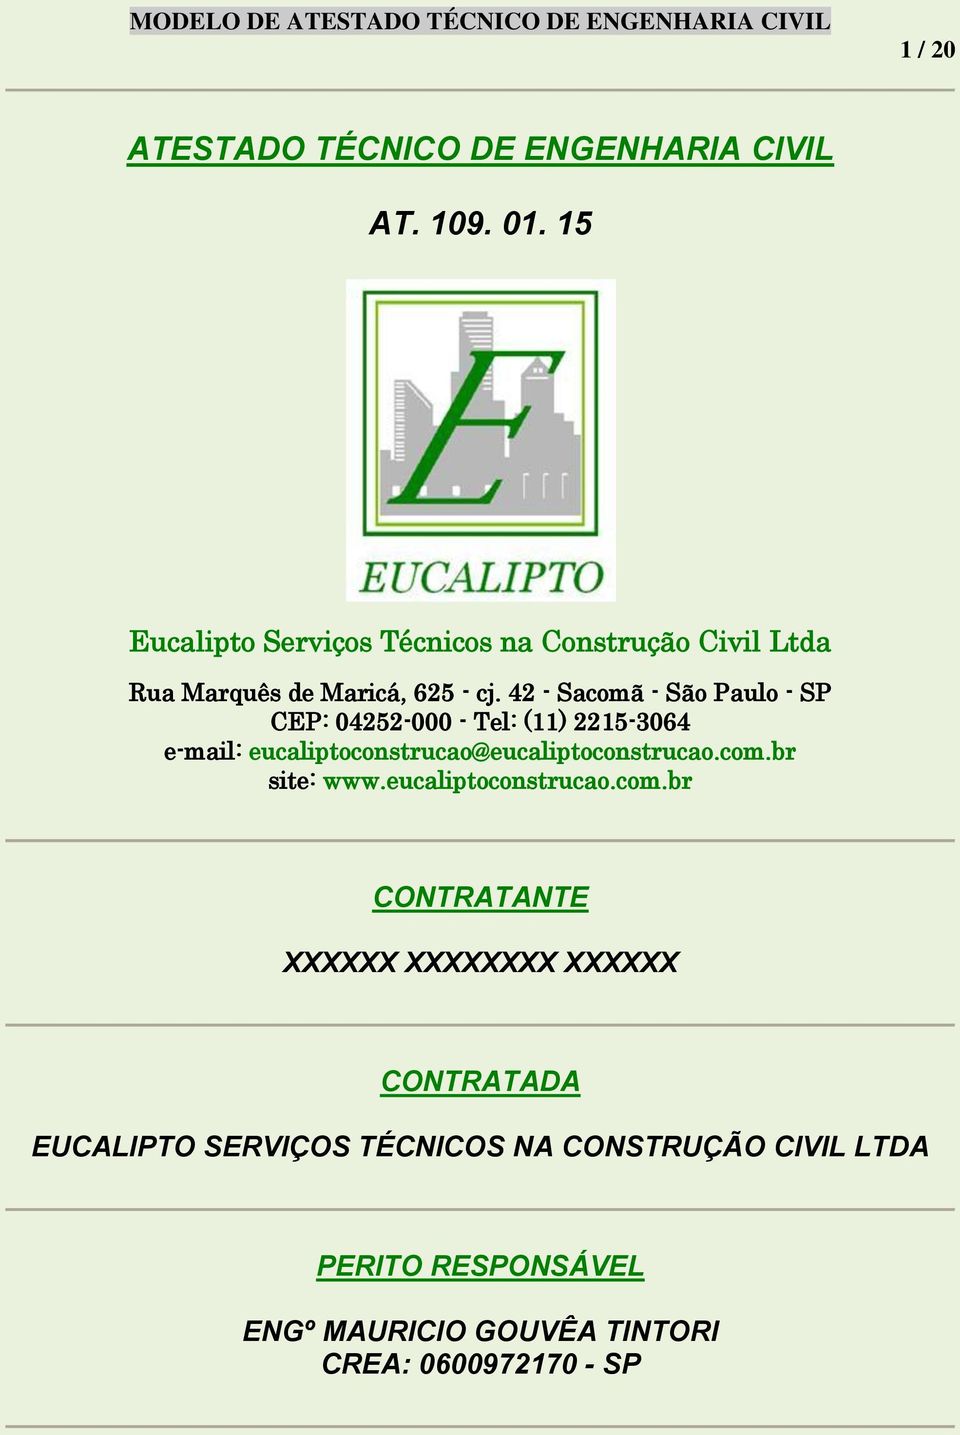 42 - Sacomã - São Paulo - SP CEP: 04252-000 - Tel: (11) 2215-3064 e-mail: eucaliptoconstrucao@eucaliptoconstrucao.com.br site: www.